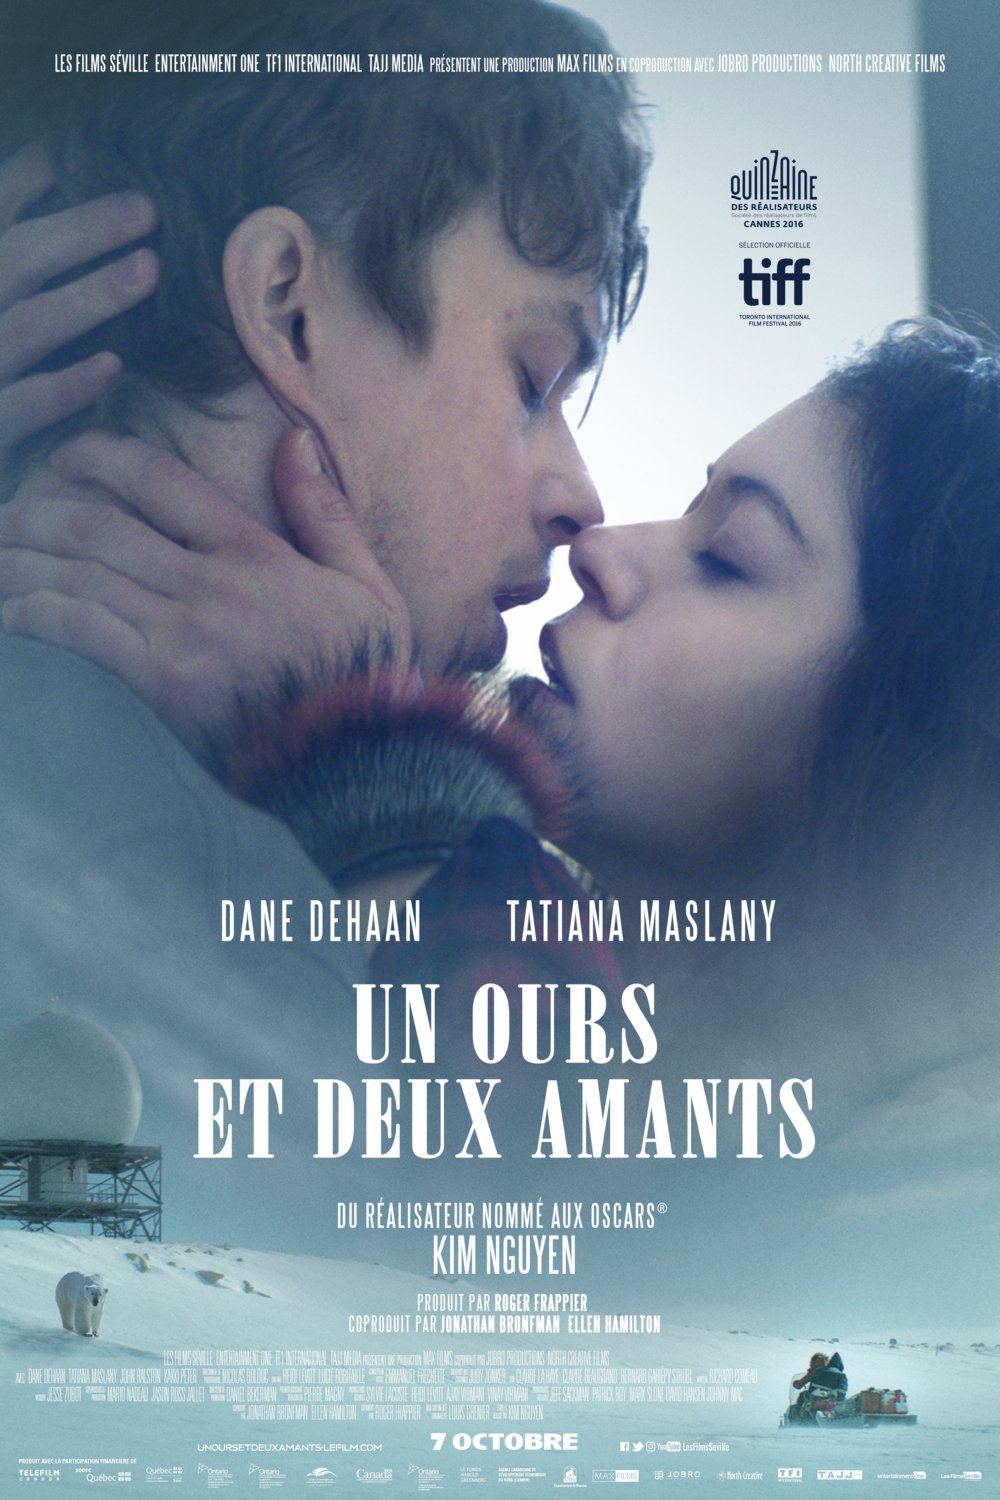 Poster of the movie Un Ours et deux amants